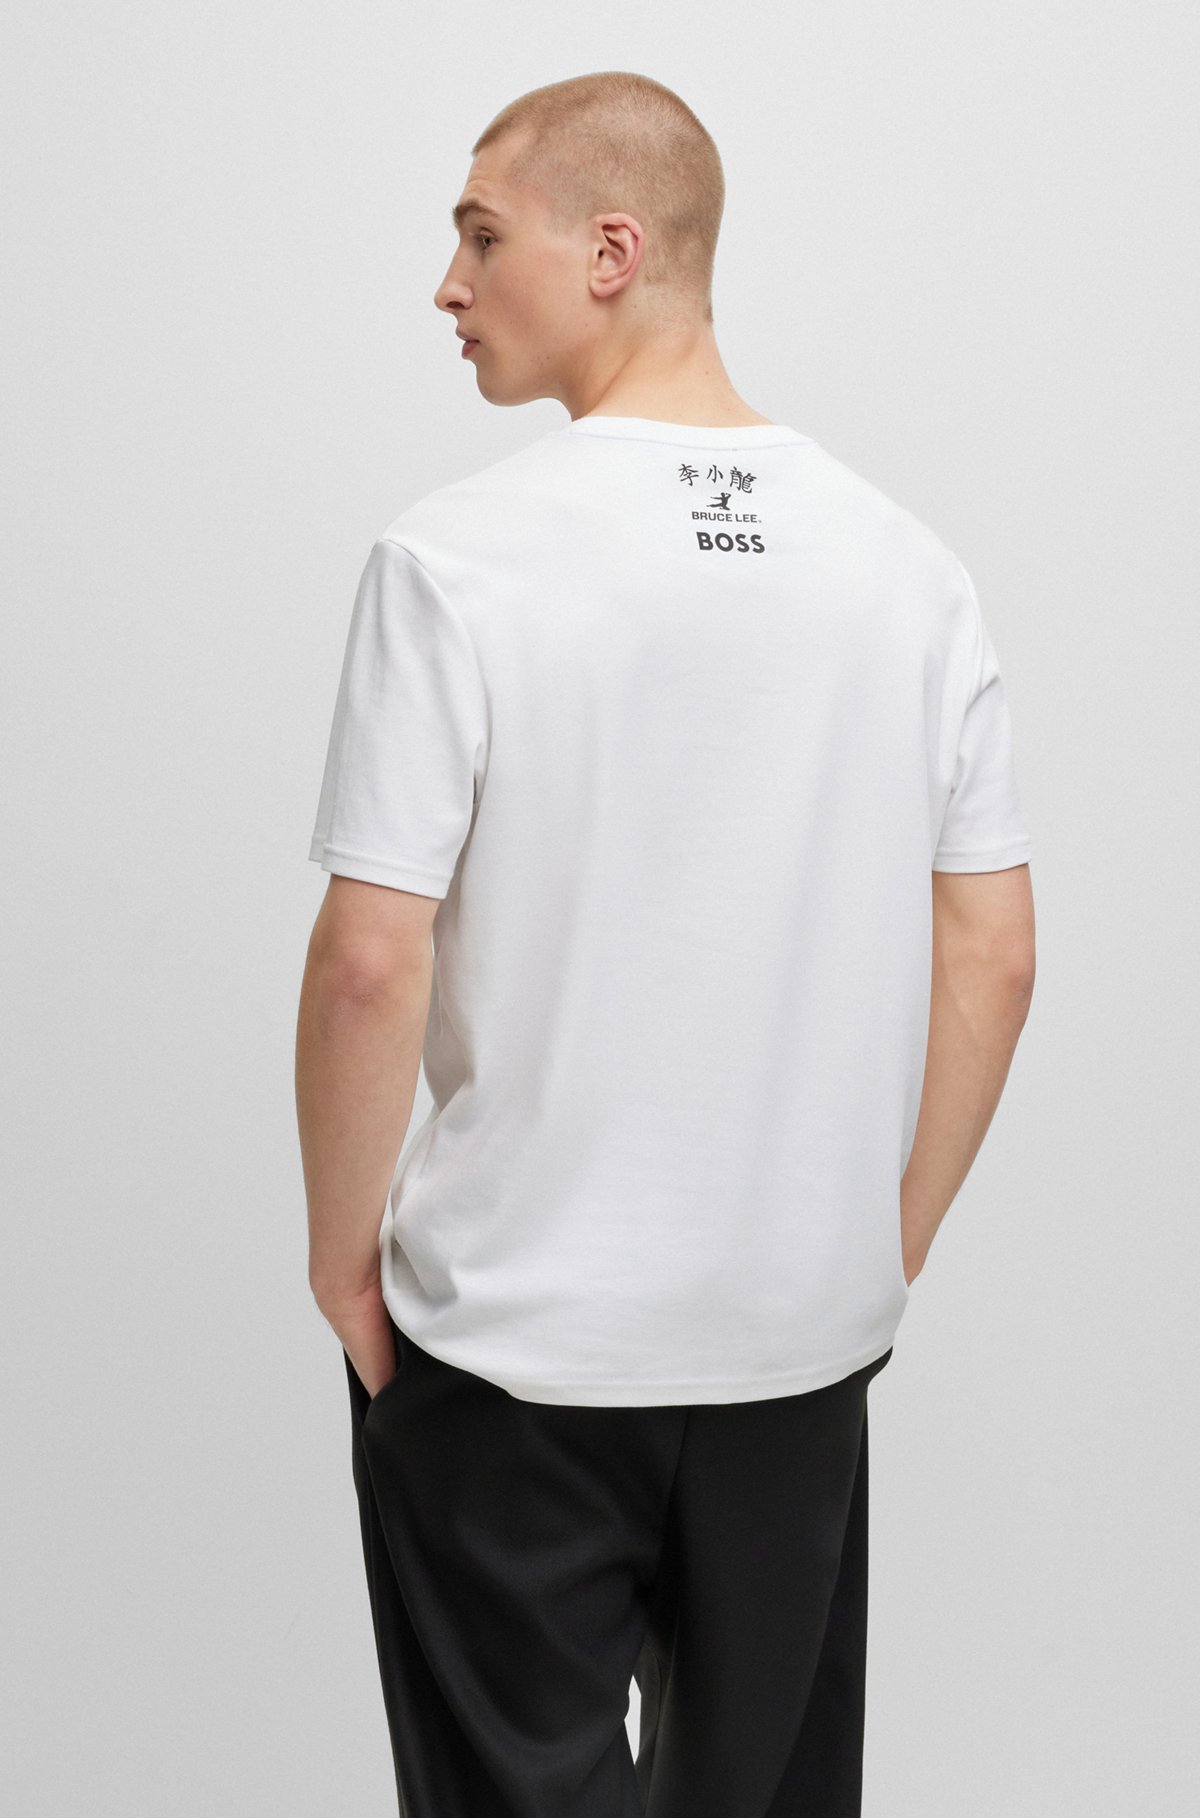 Articulatie insluiten Baffle BOSS - BOSS x Bruce Lee genderneutraal T-shirt met foto-artwork